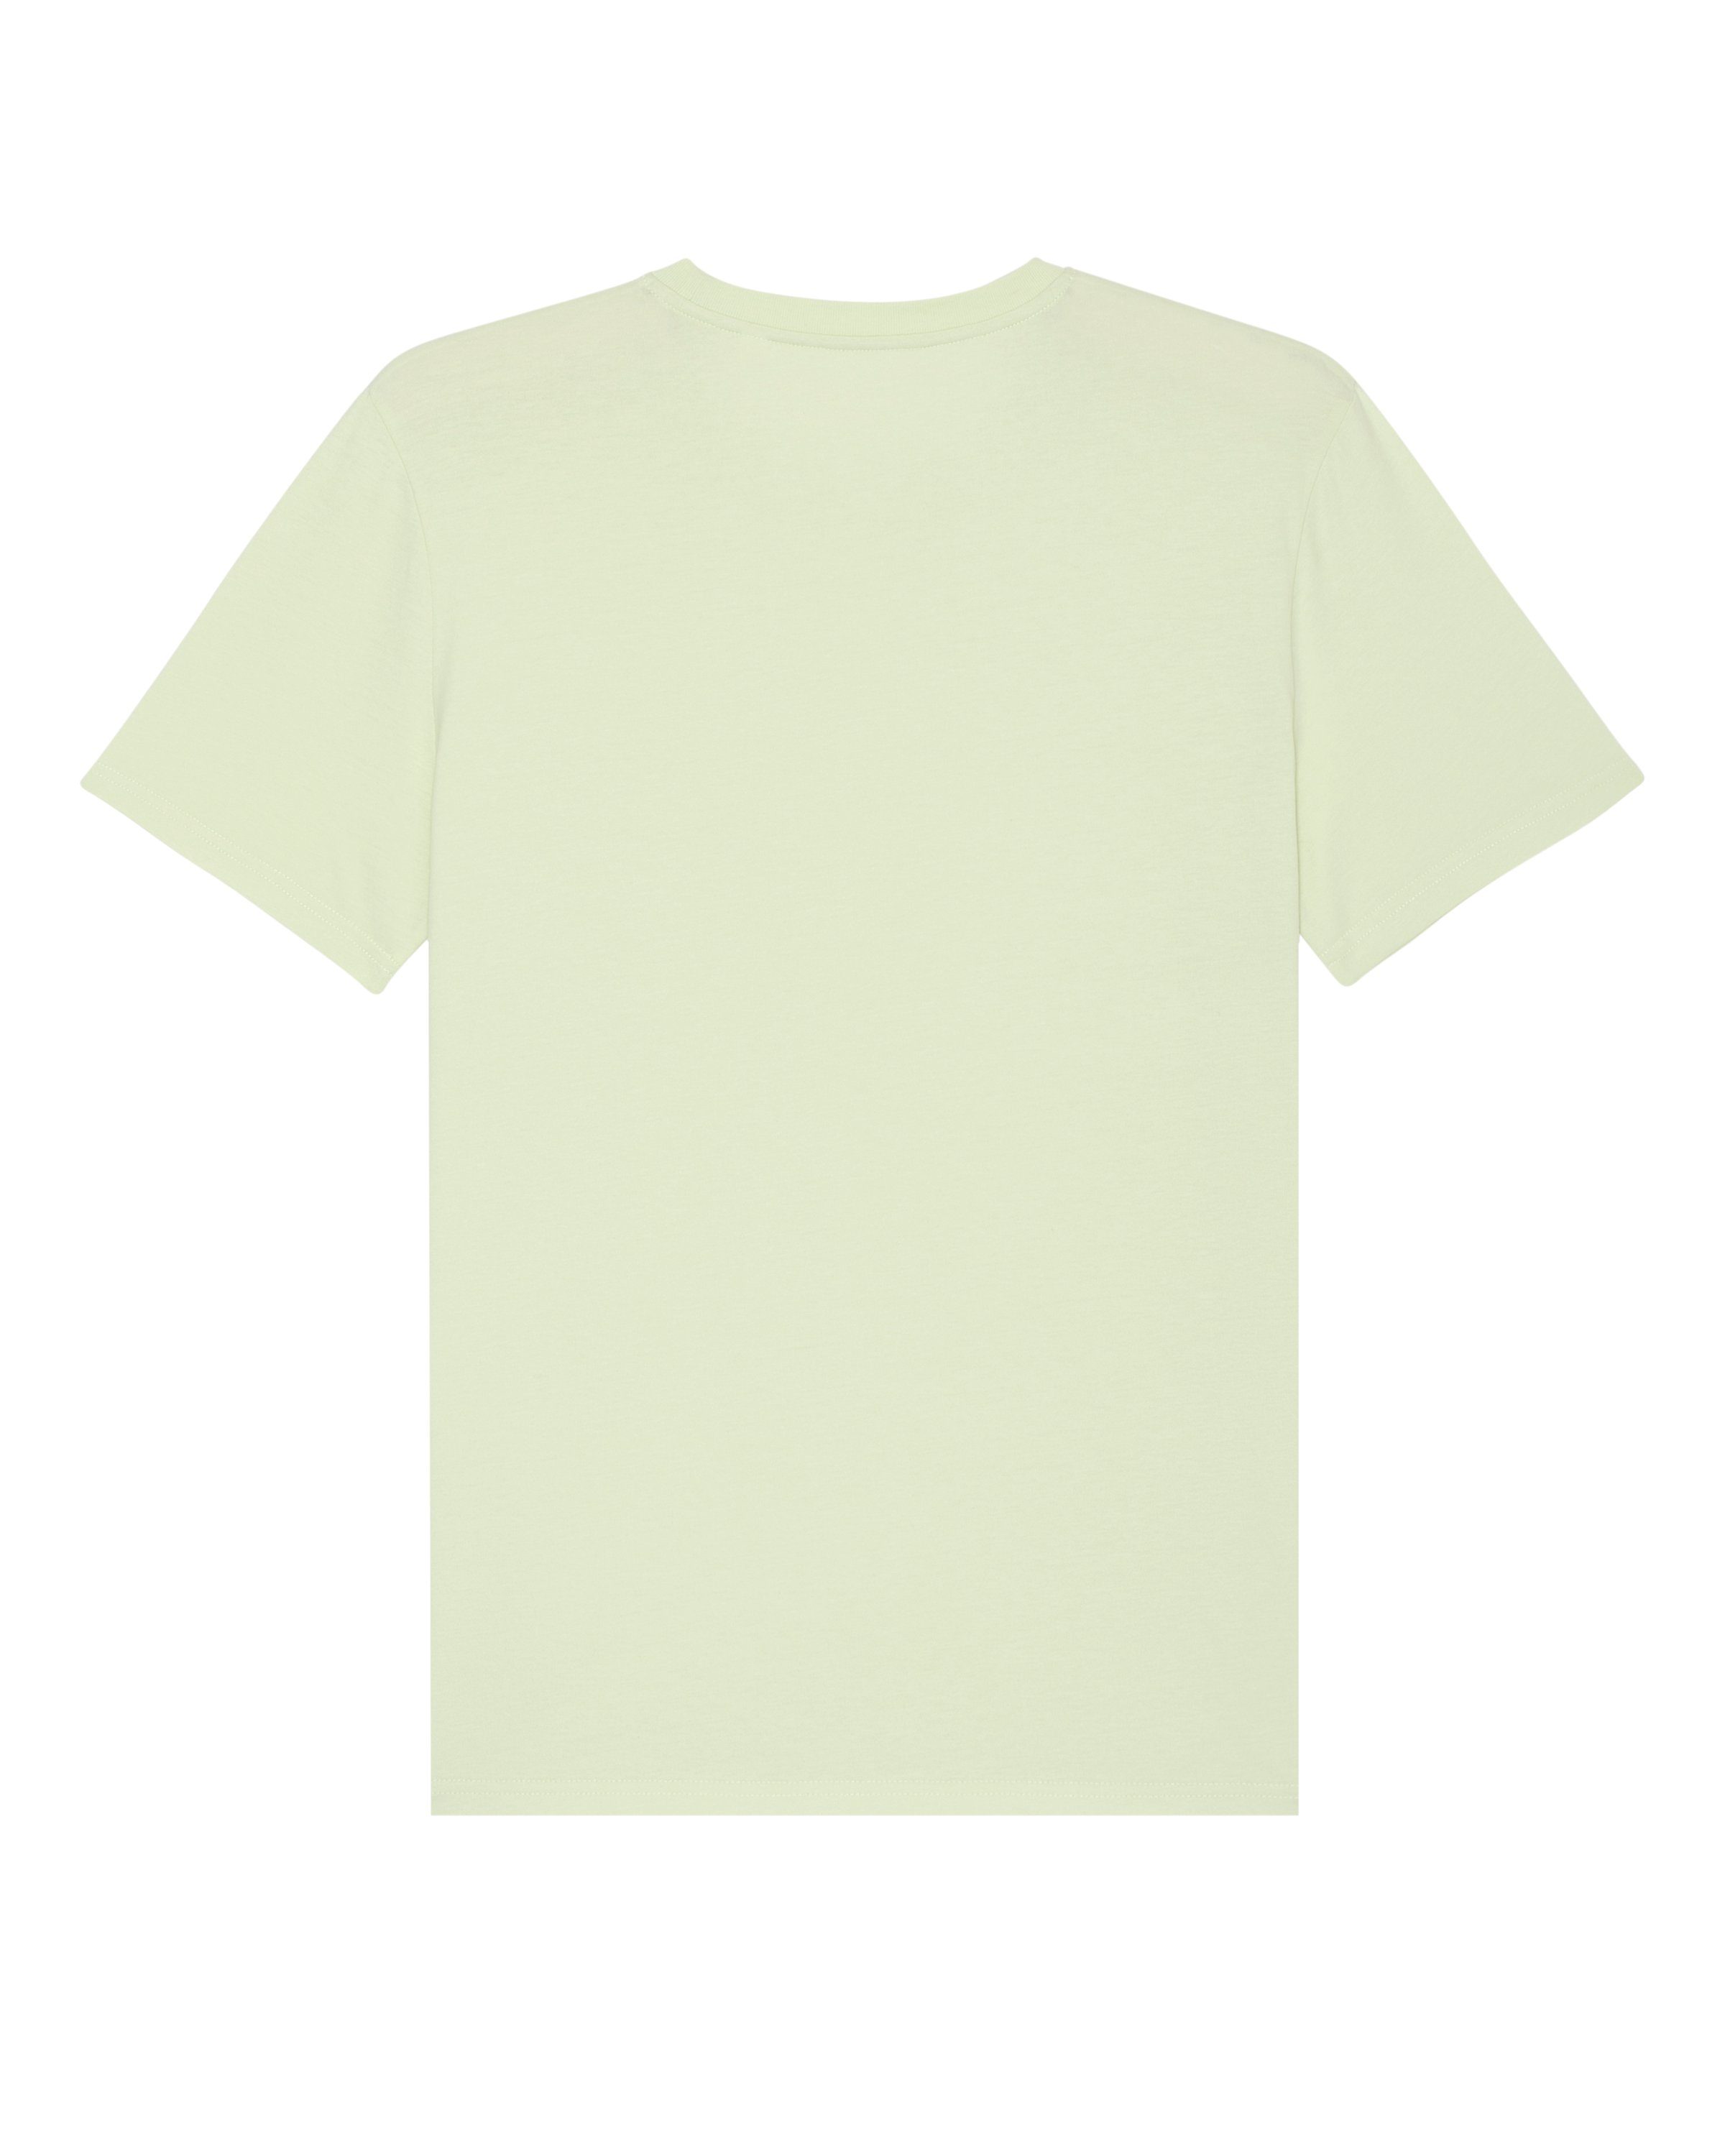 (1-tlg) wat? Astronaut Green Little Stem Balloon Apparel Print-Shirt